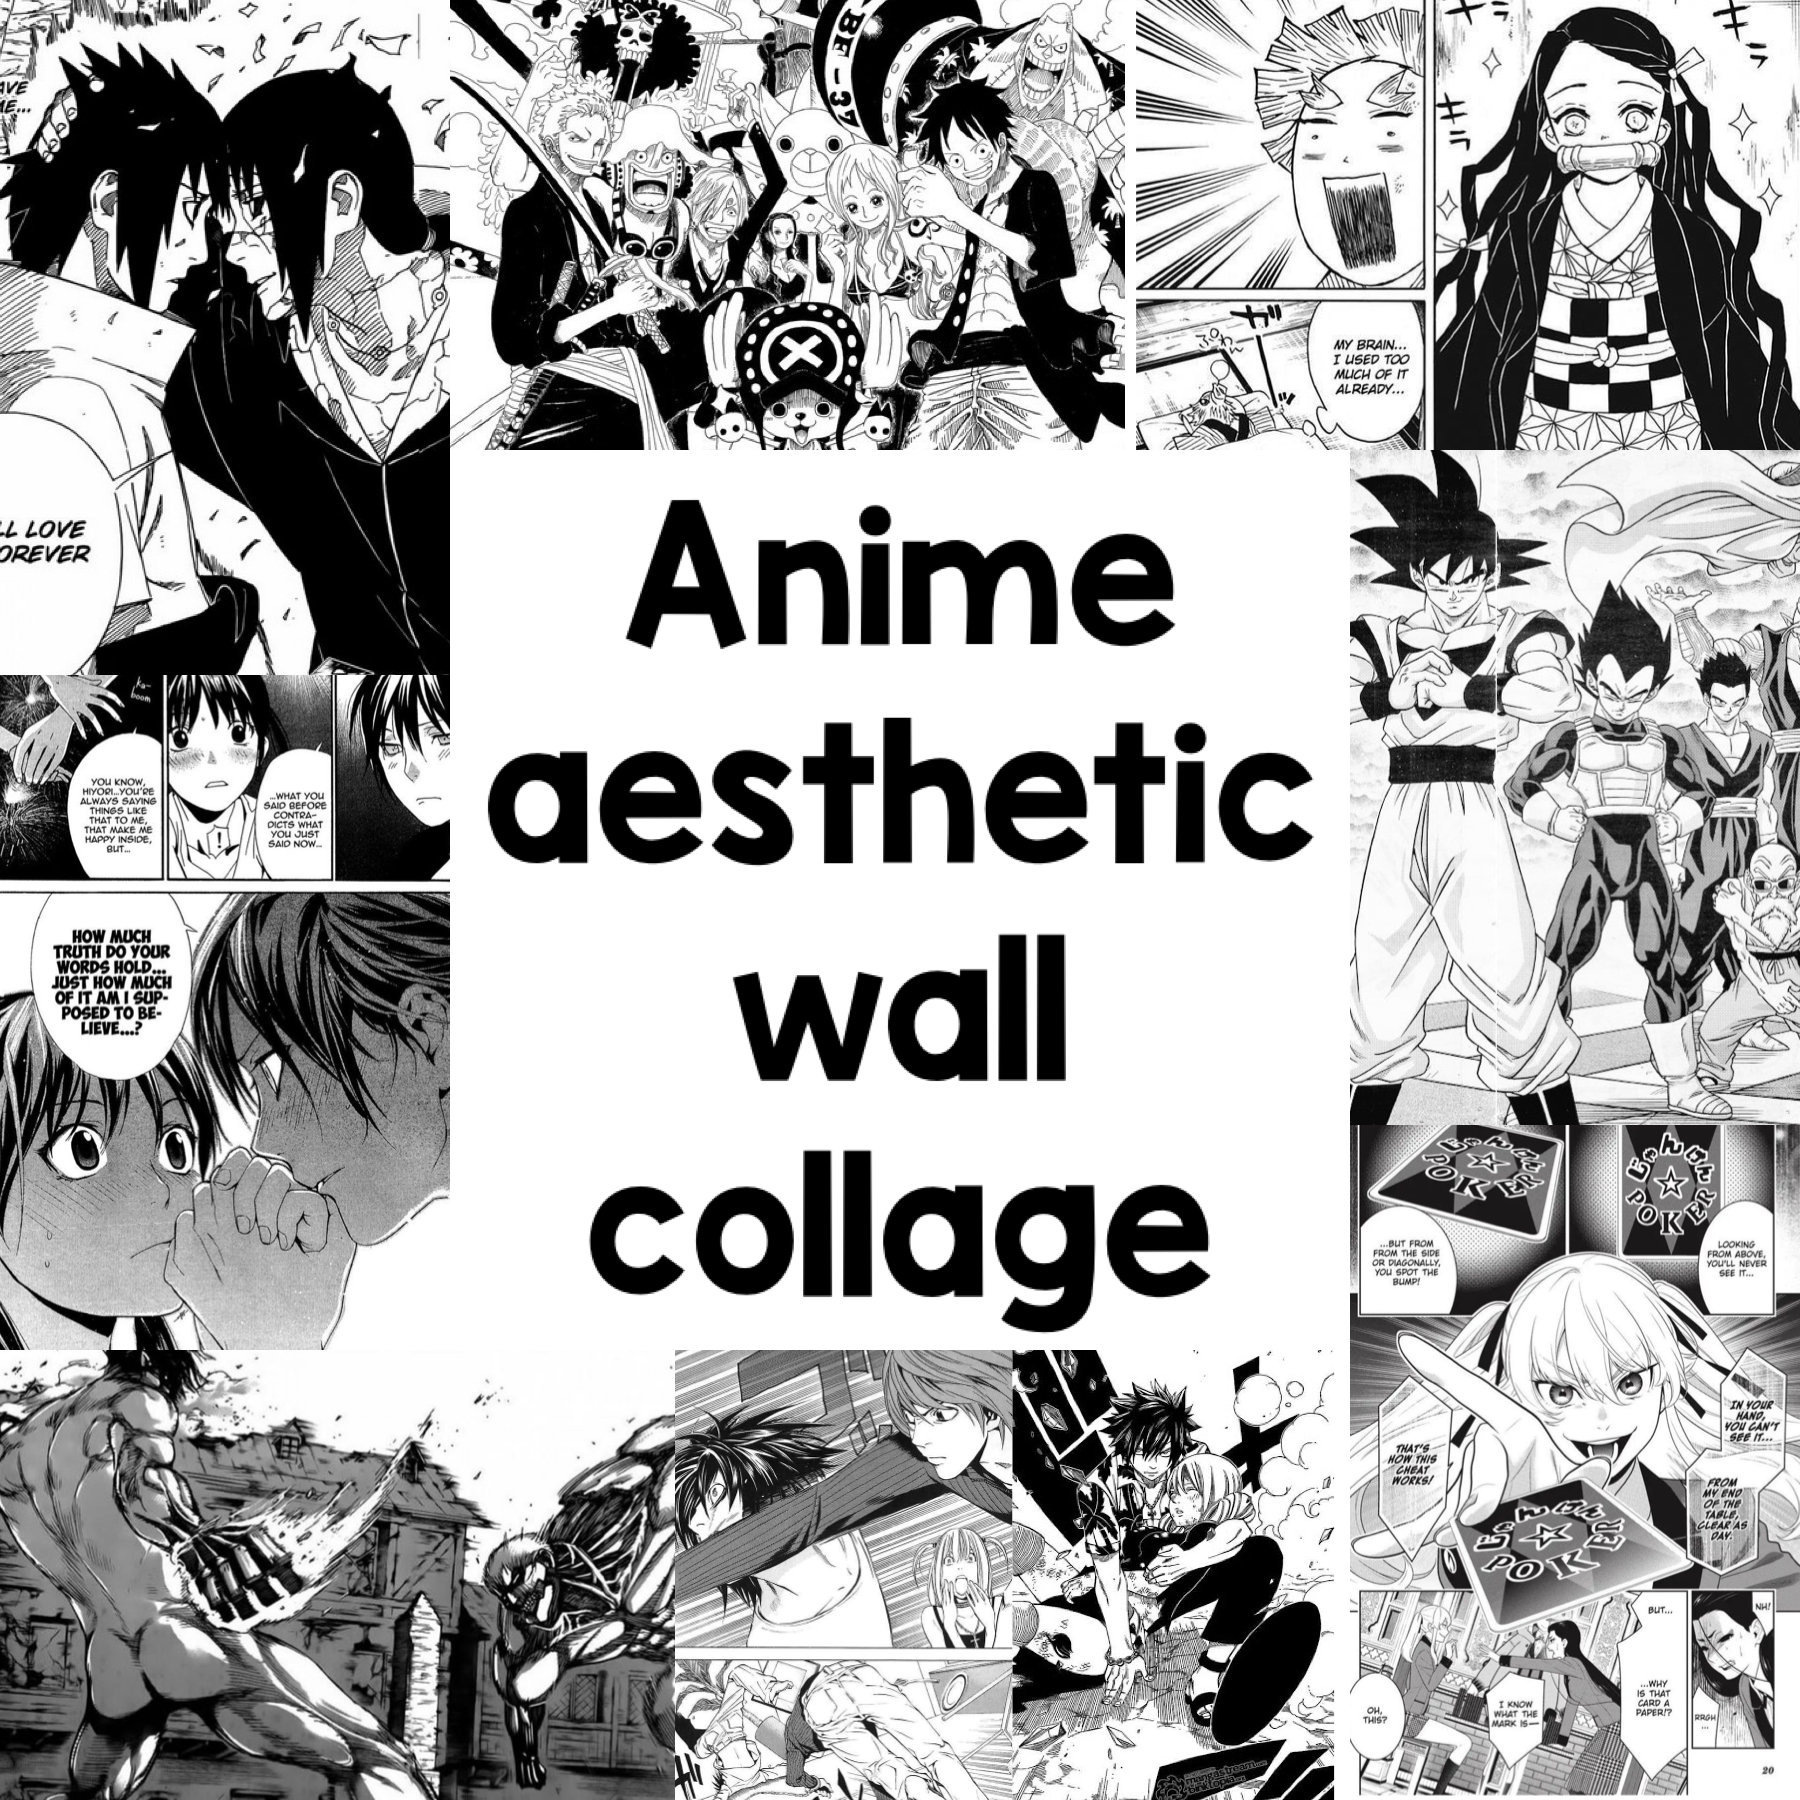 Discussão de animes/mangá/vn · forum